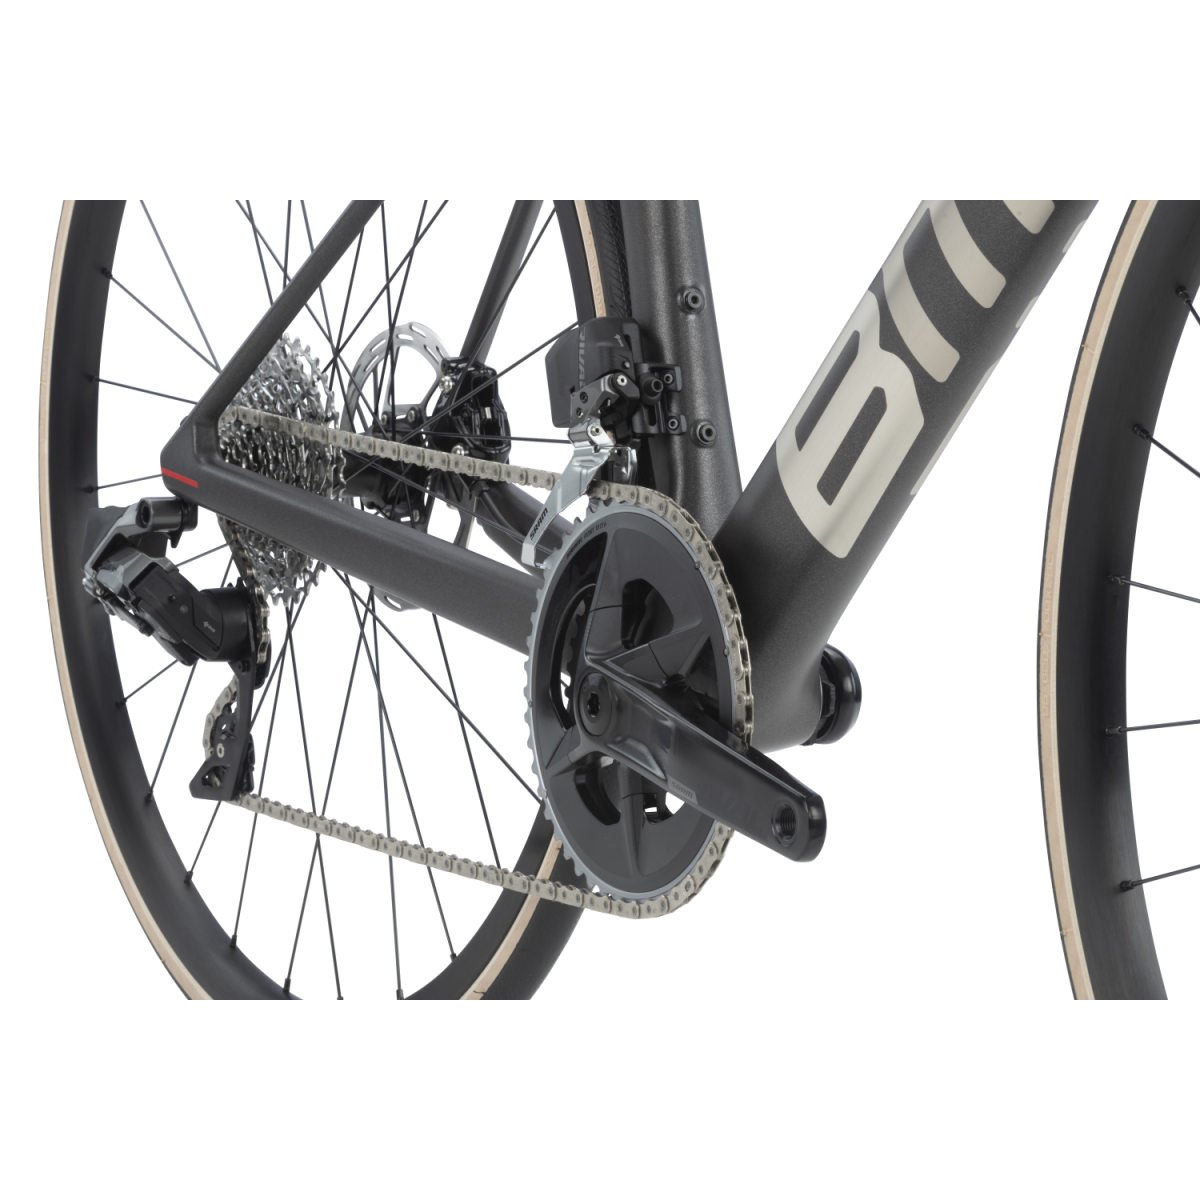 BMC Teammachine SLR Four plento dviratis / Anthracite - Brushed Alloy